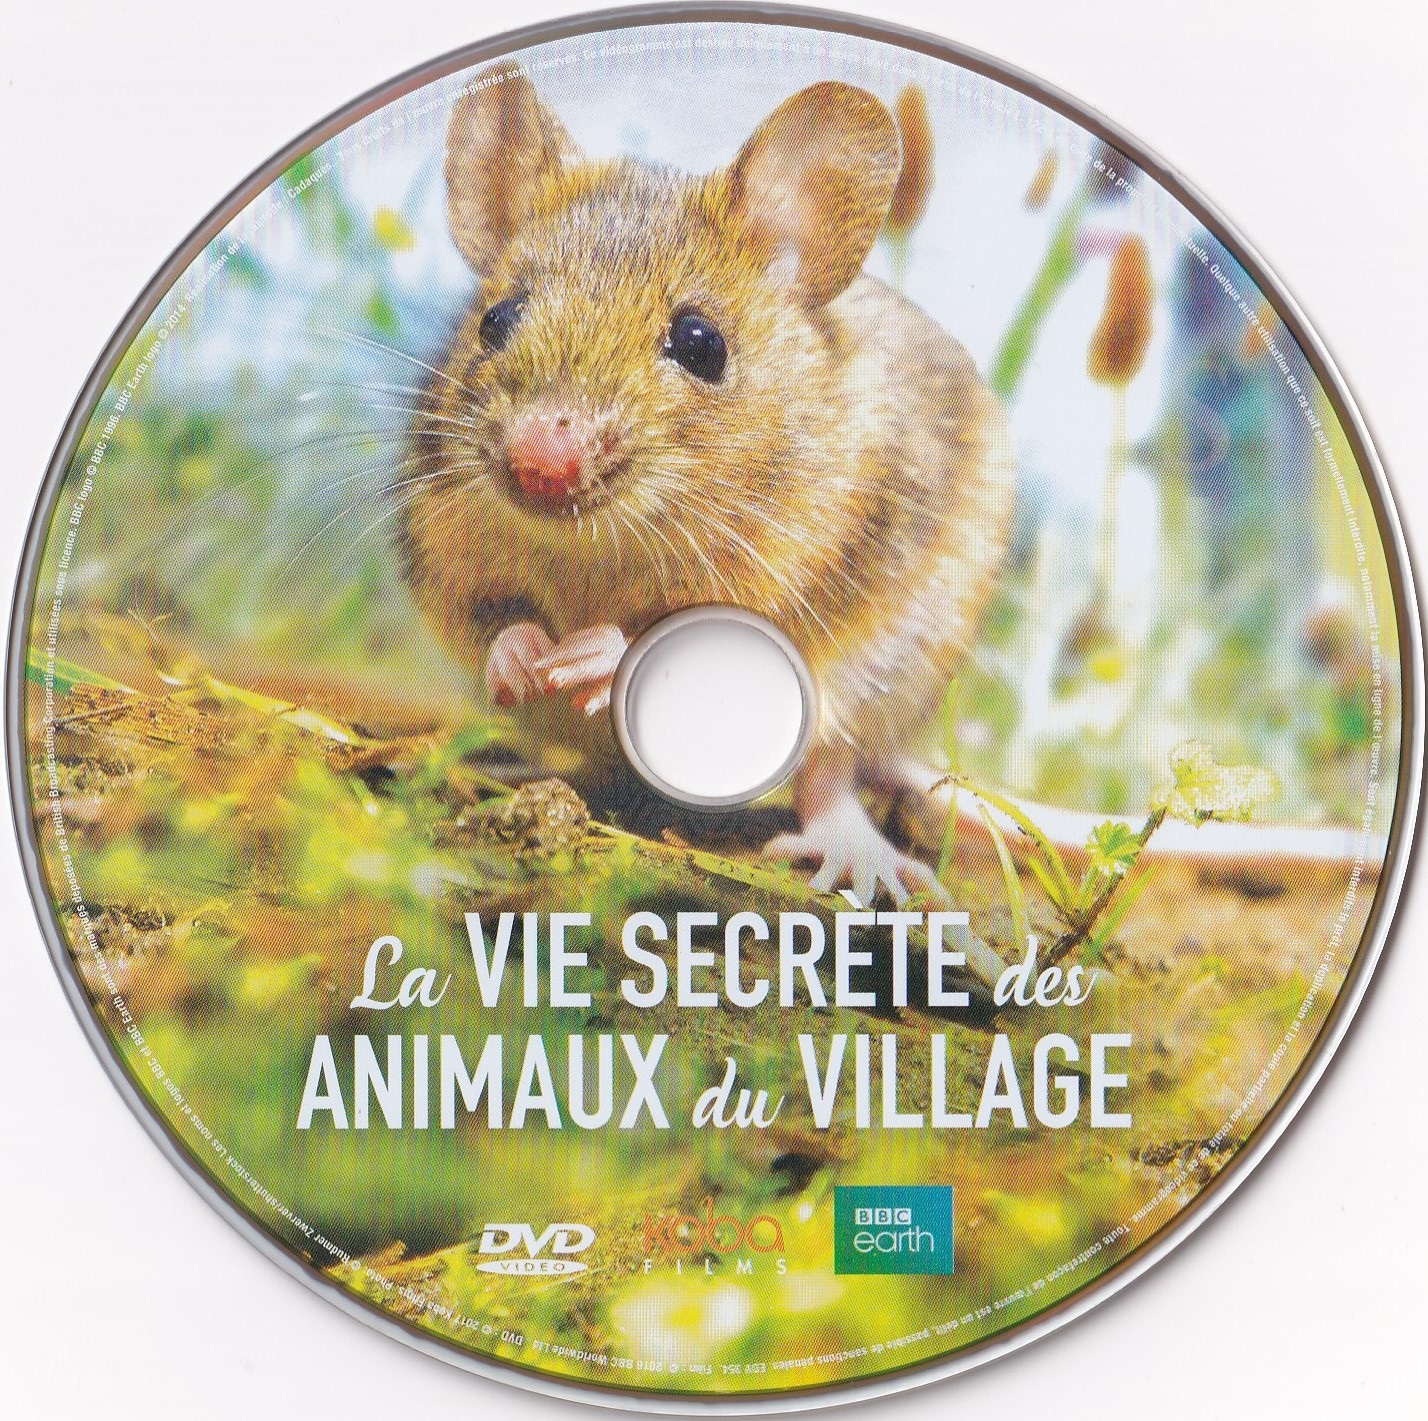 La Vie Secrete des Animaux du Village